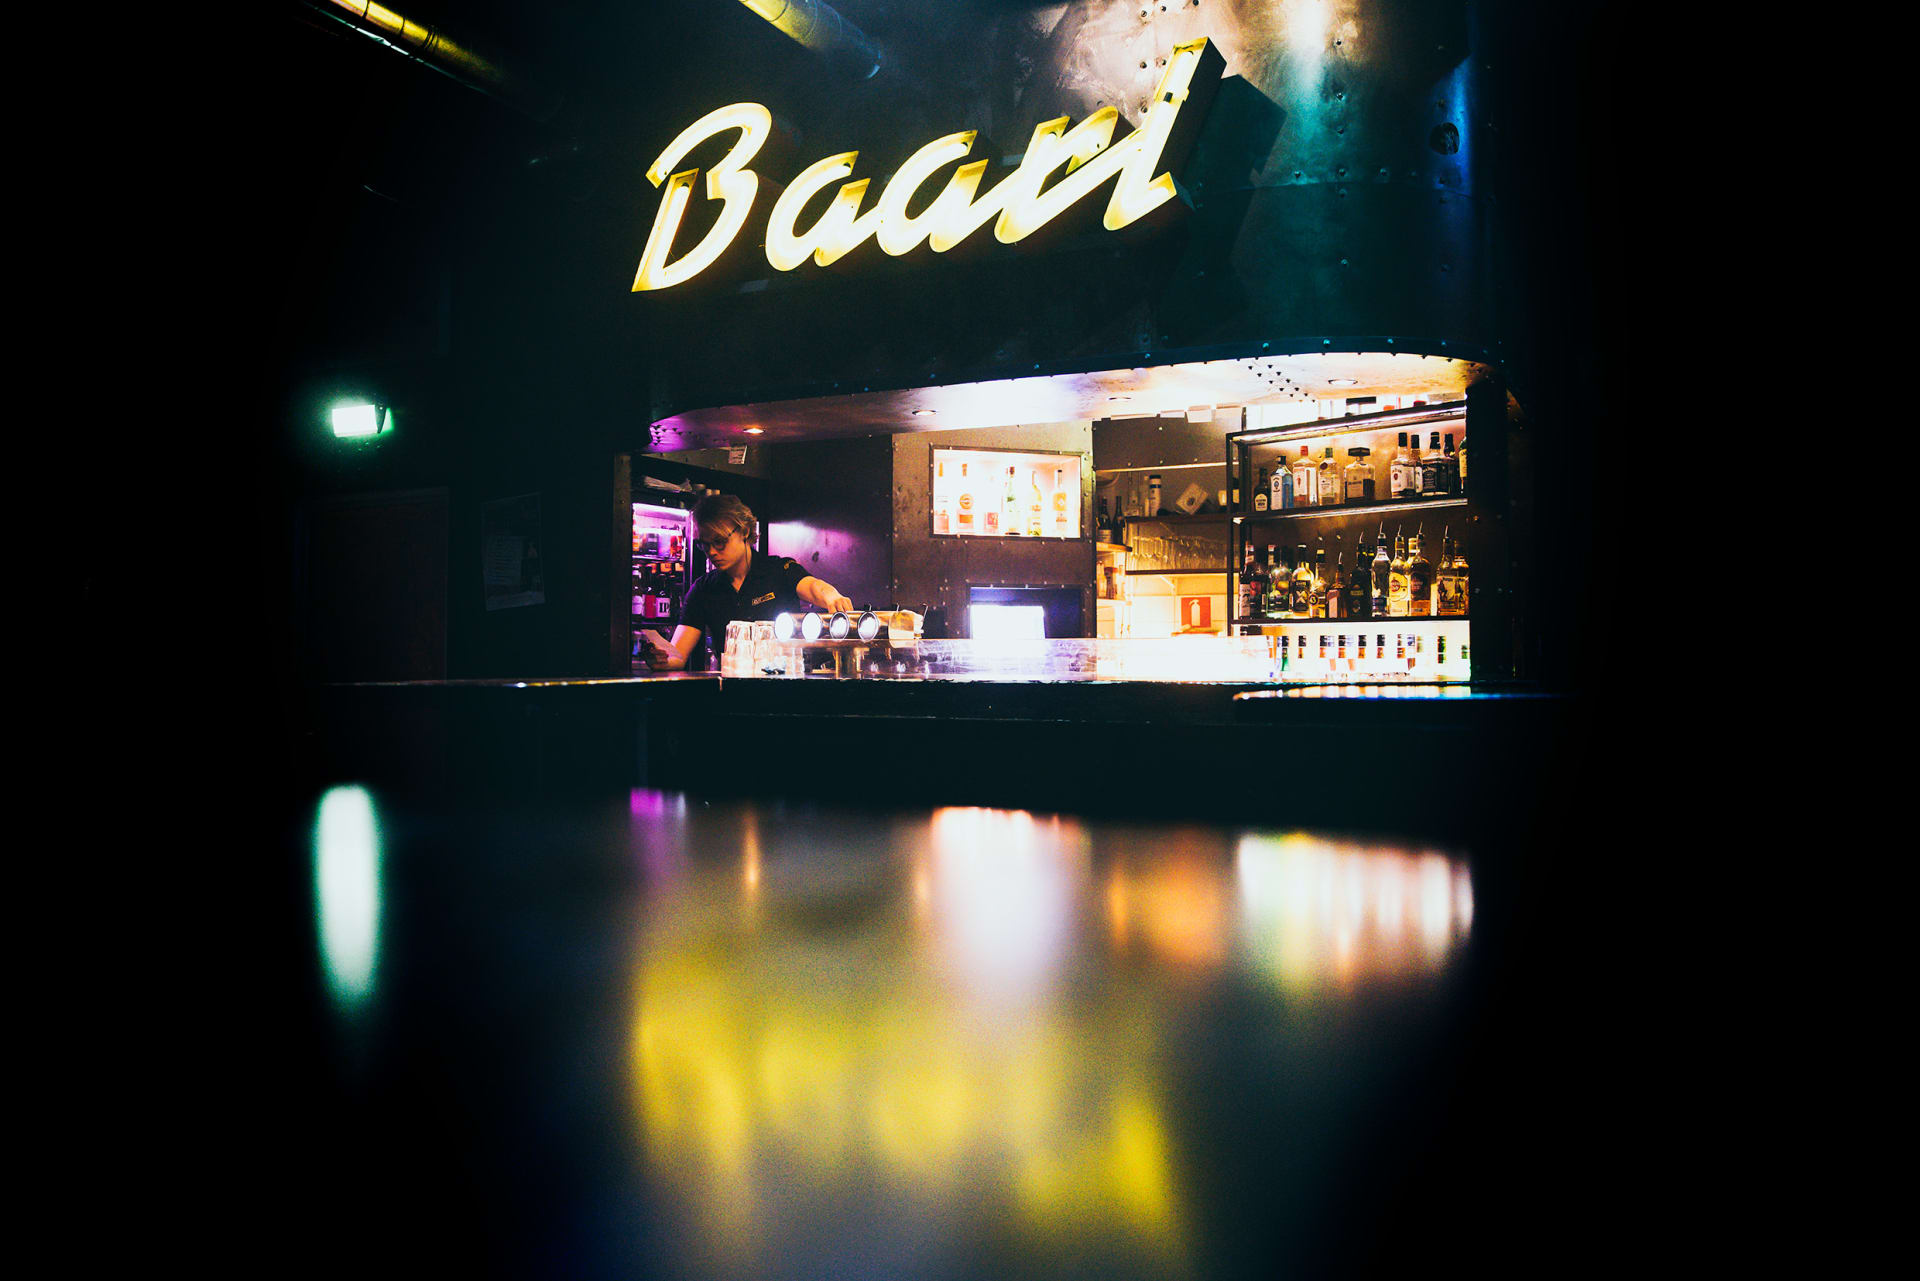 Bar is Baari in Finnish